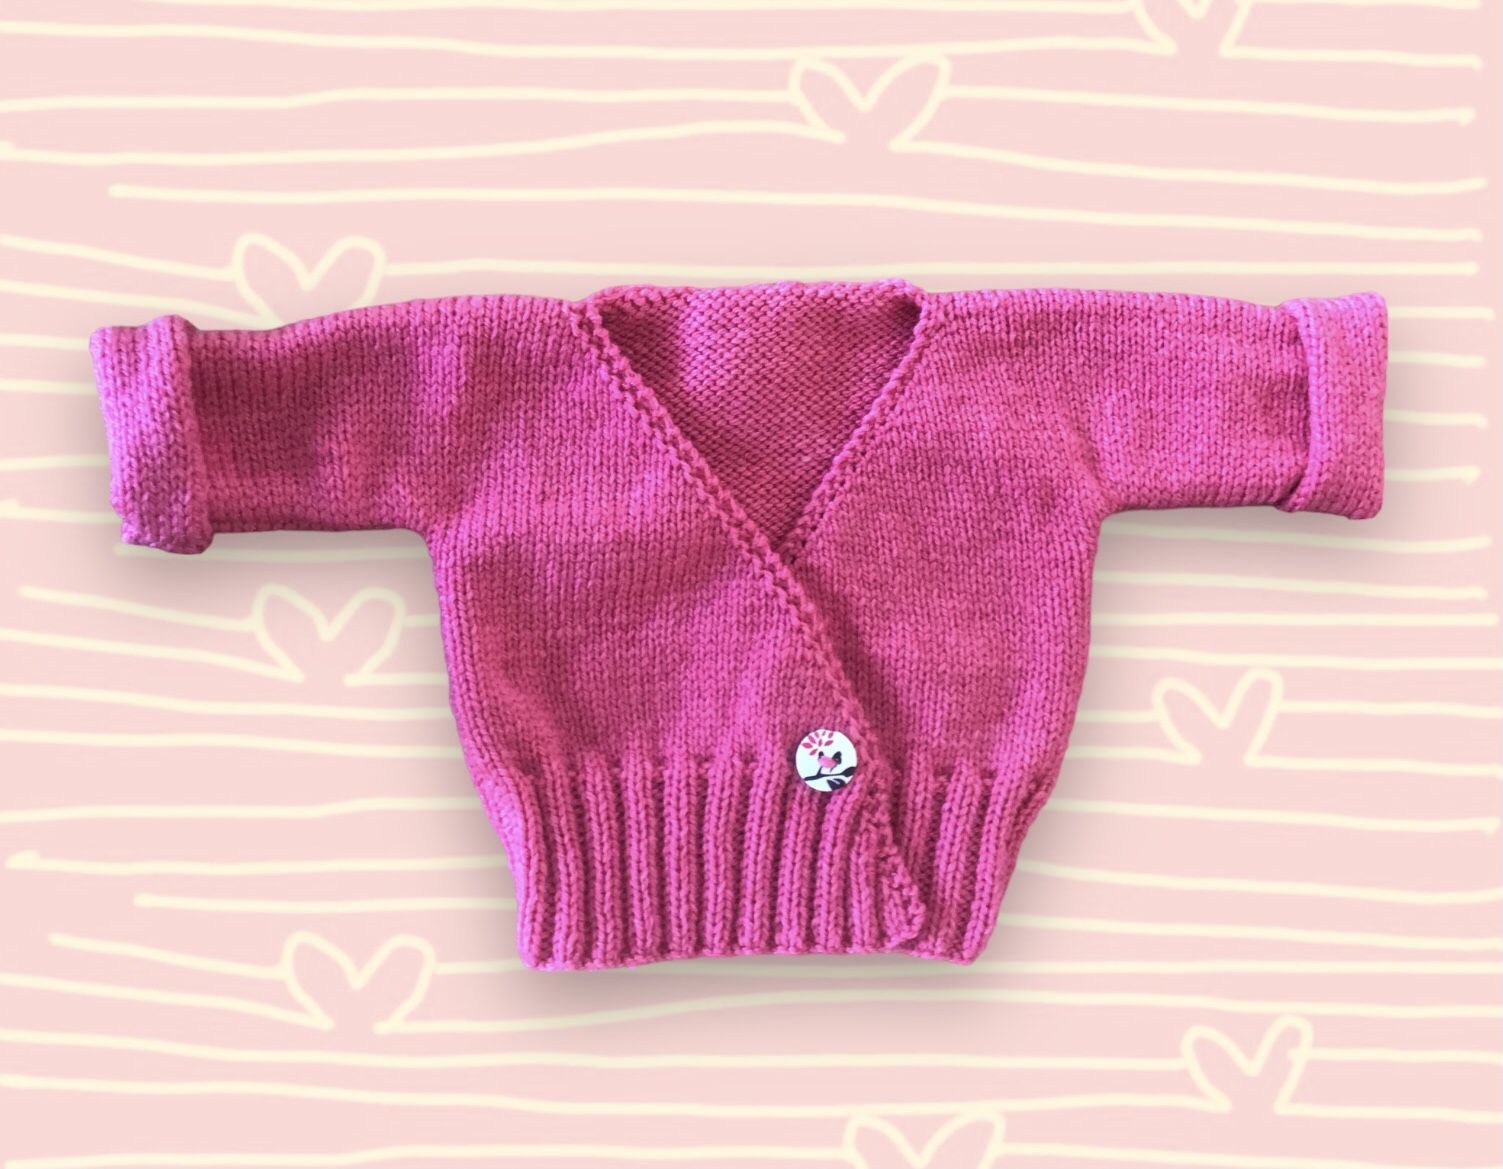 Brassière NAISSANCE croisée, gilet cache coeur, tricot bébé rose, modèle  layette bb sur COMMANDE